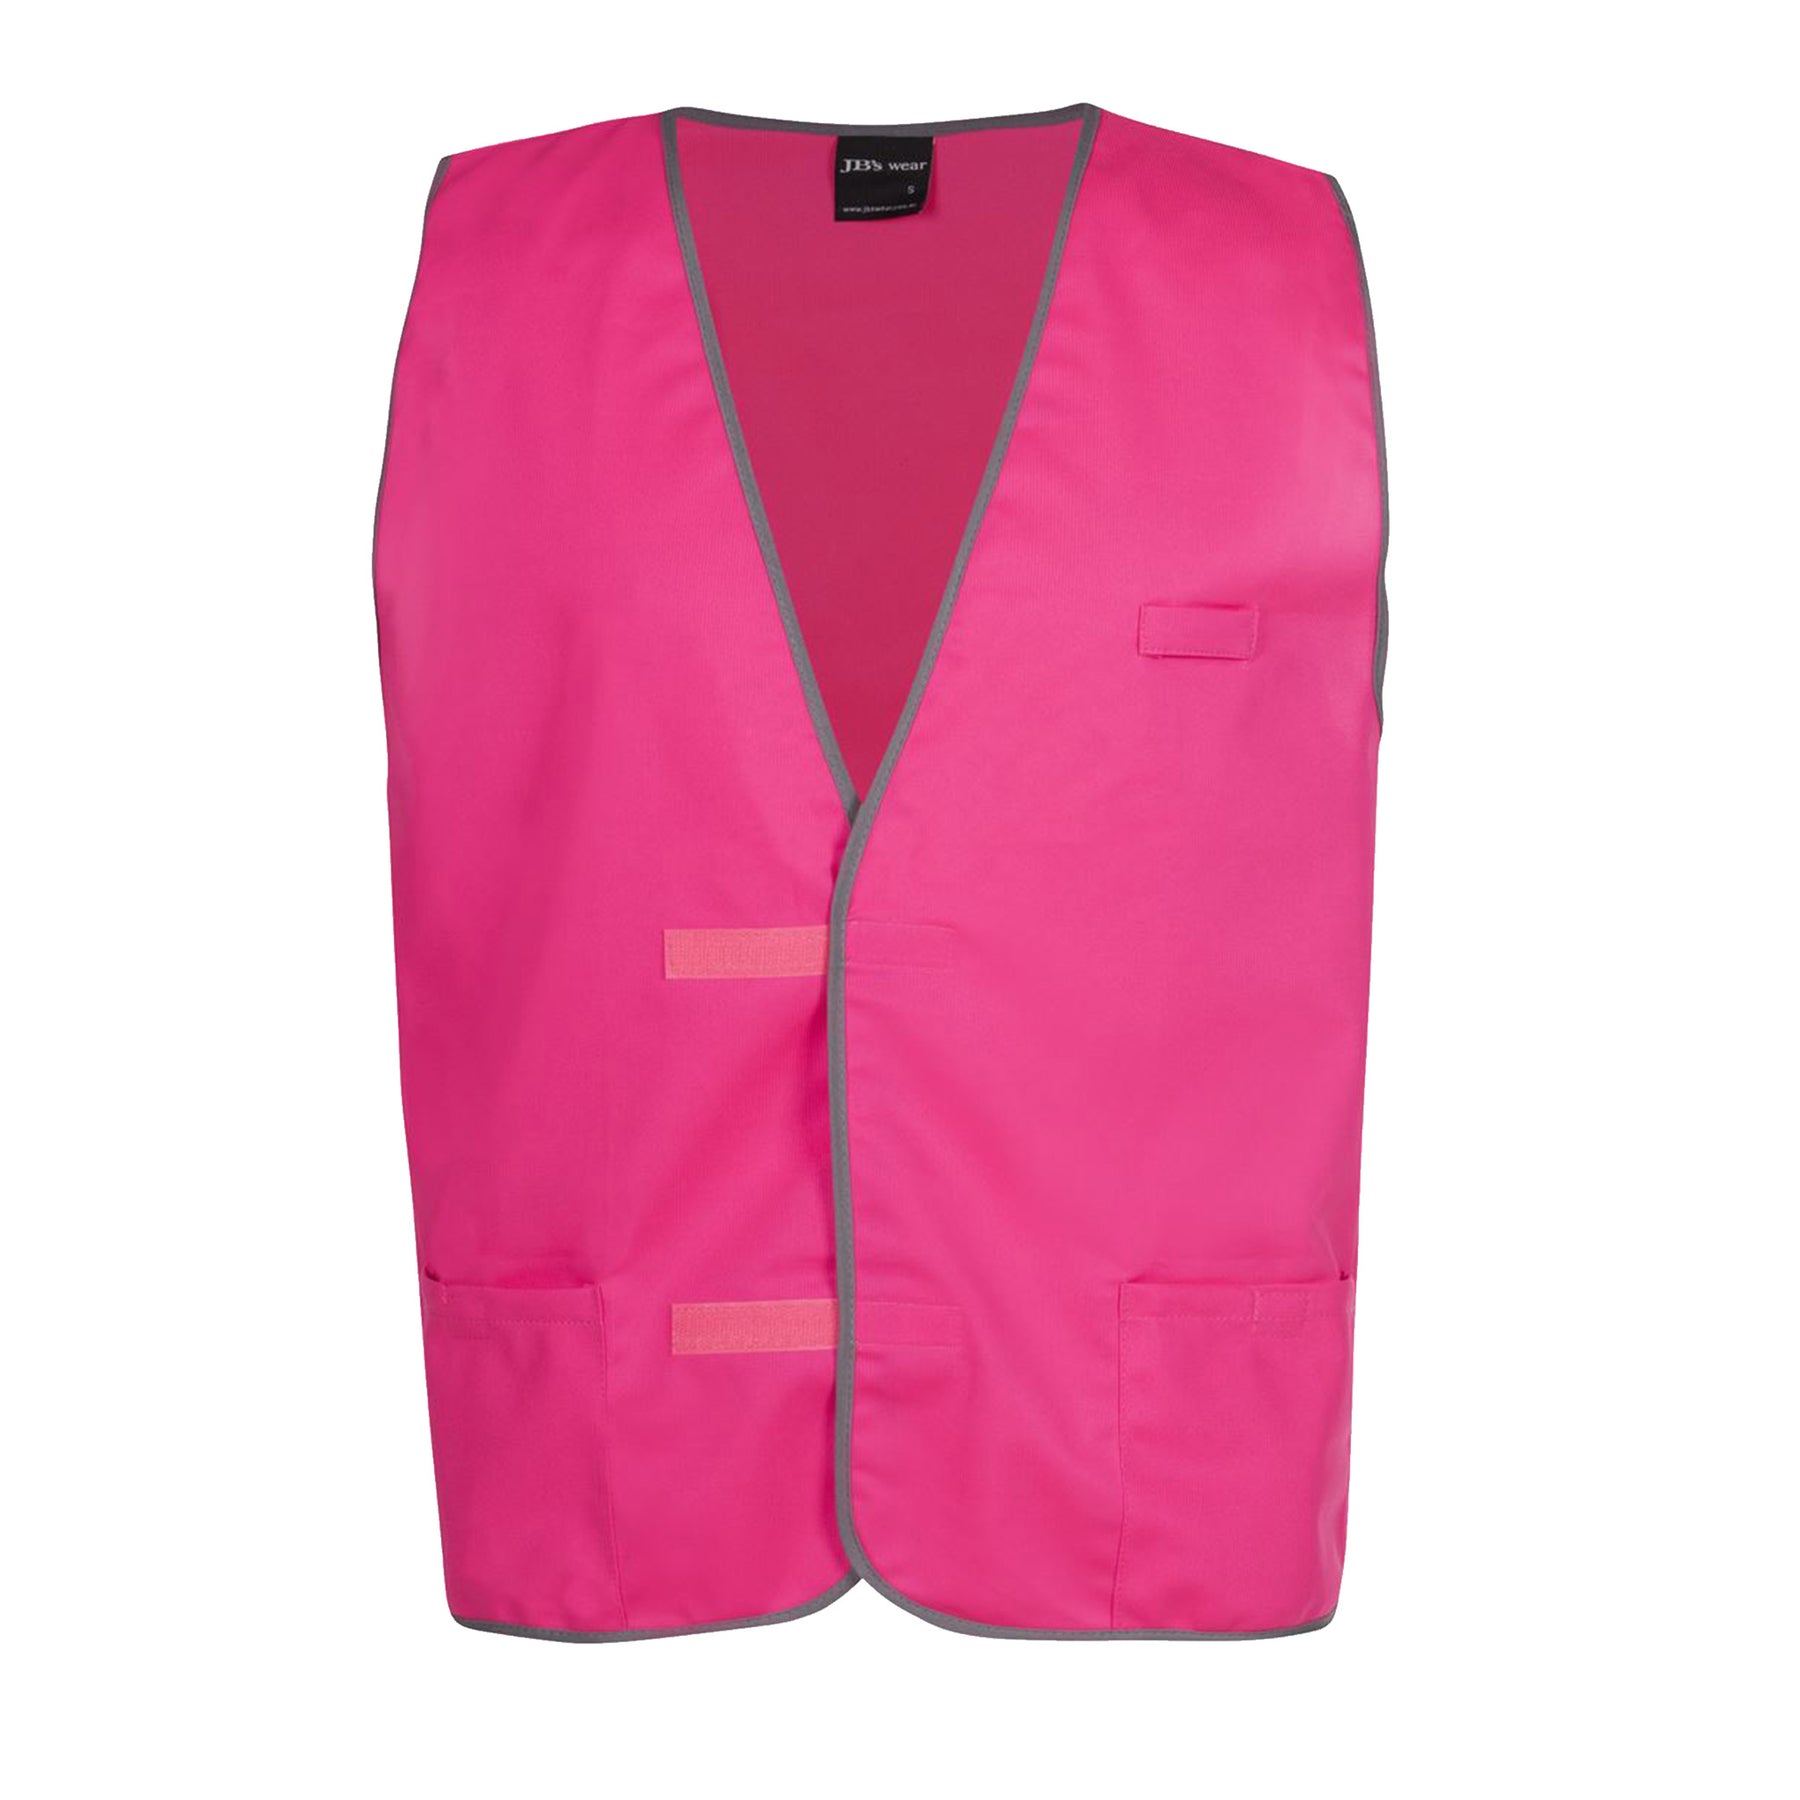 hot pink fluro vest